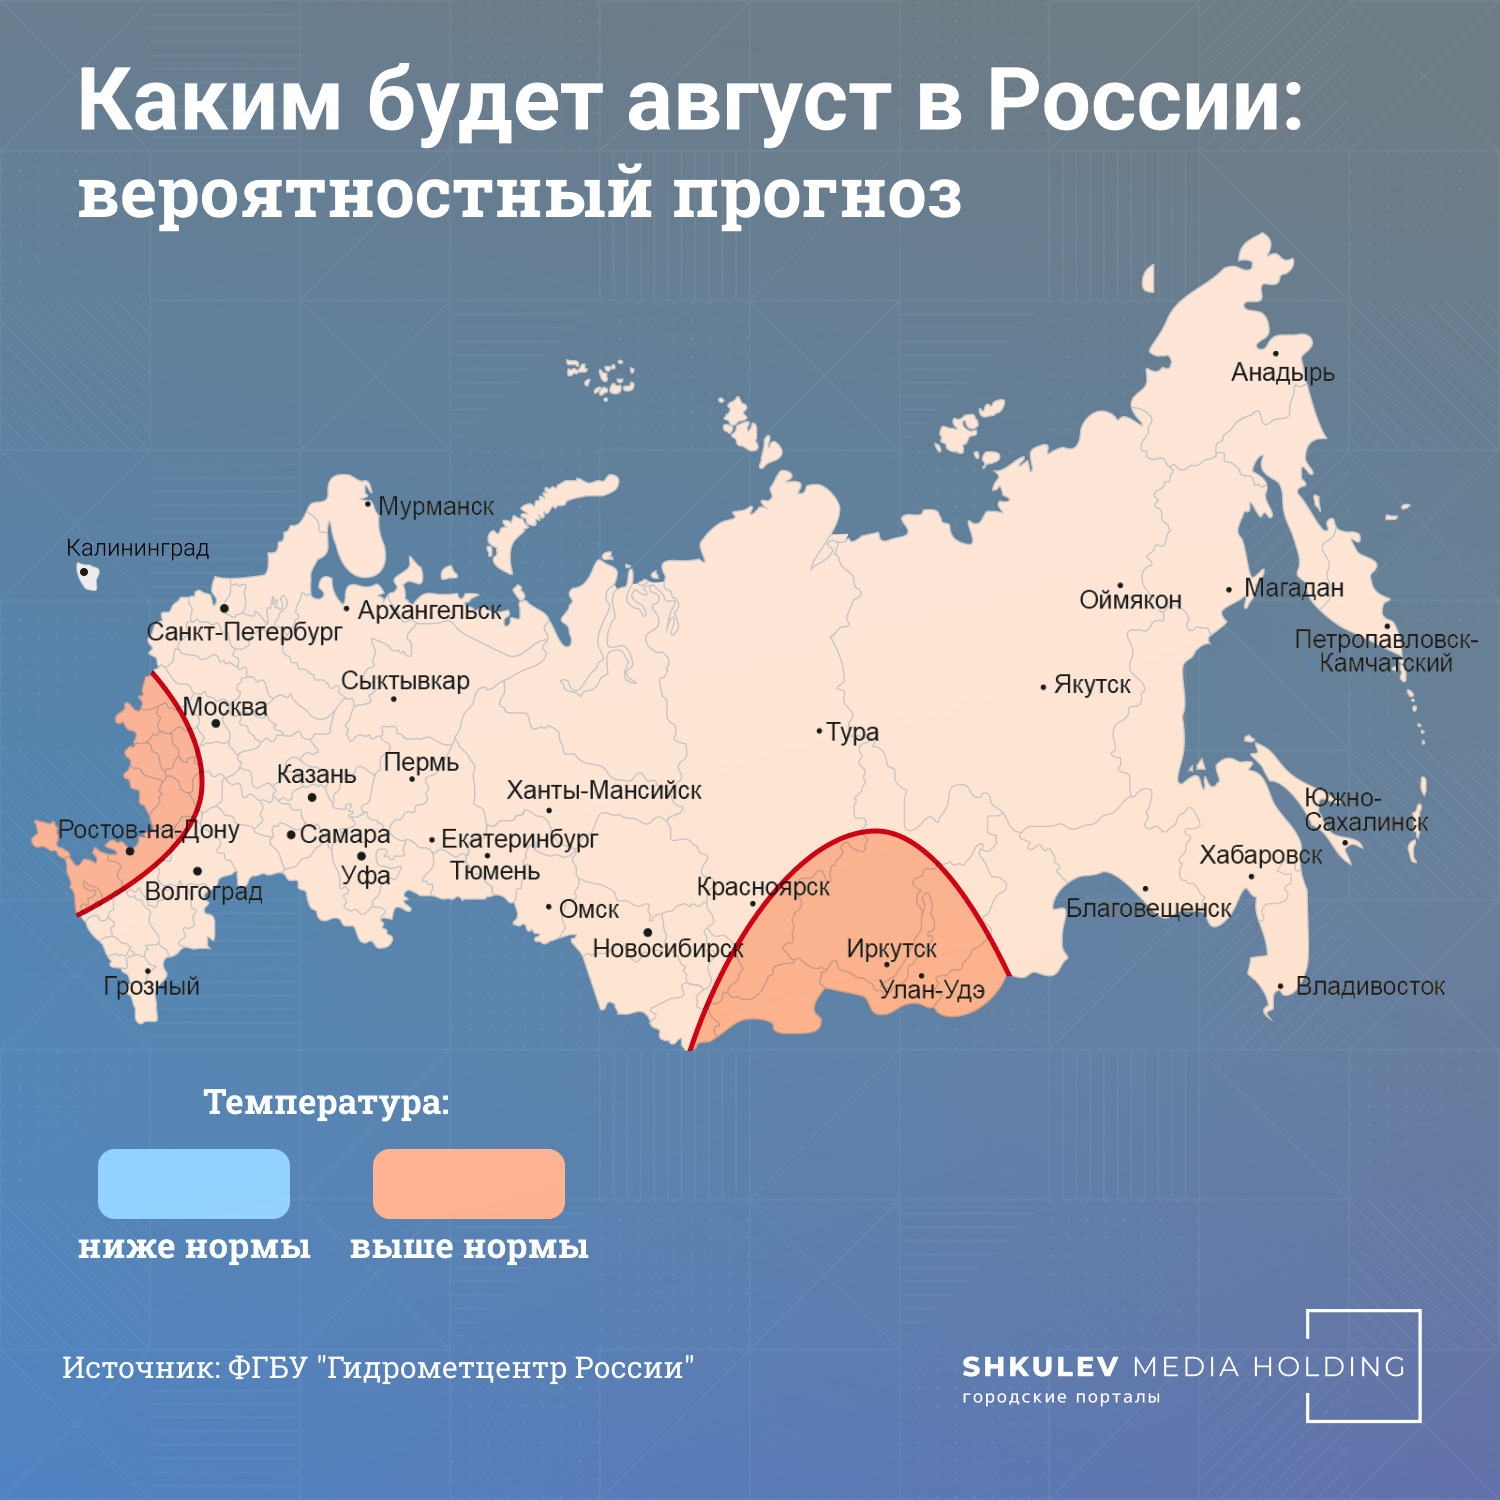 В августе на большей части территории России температура будет около нормы